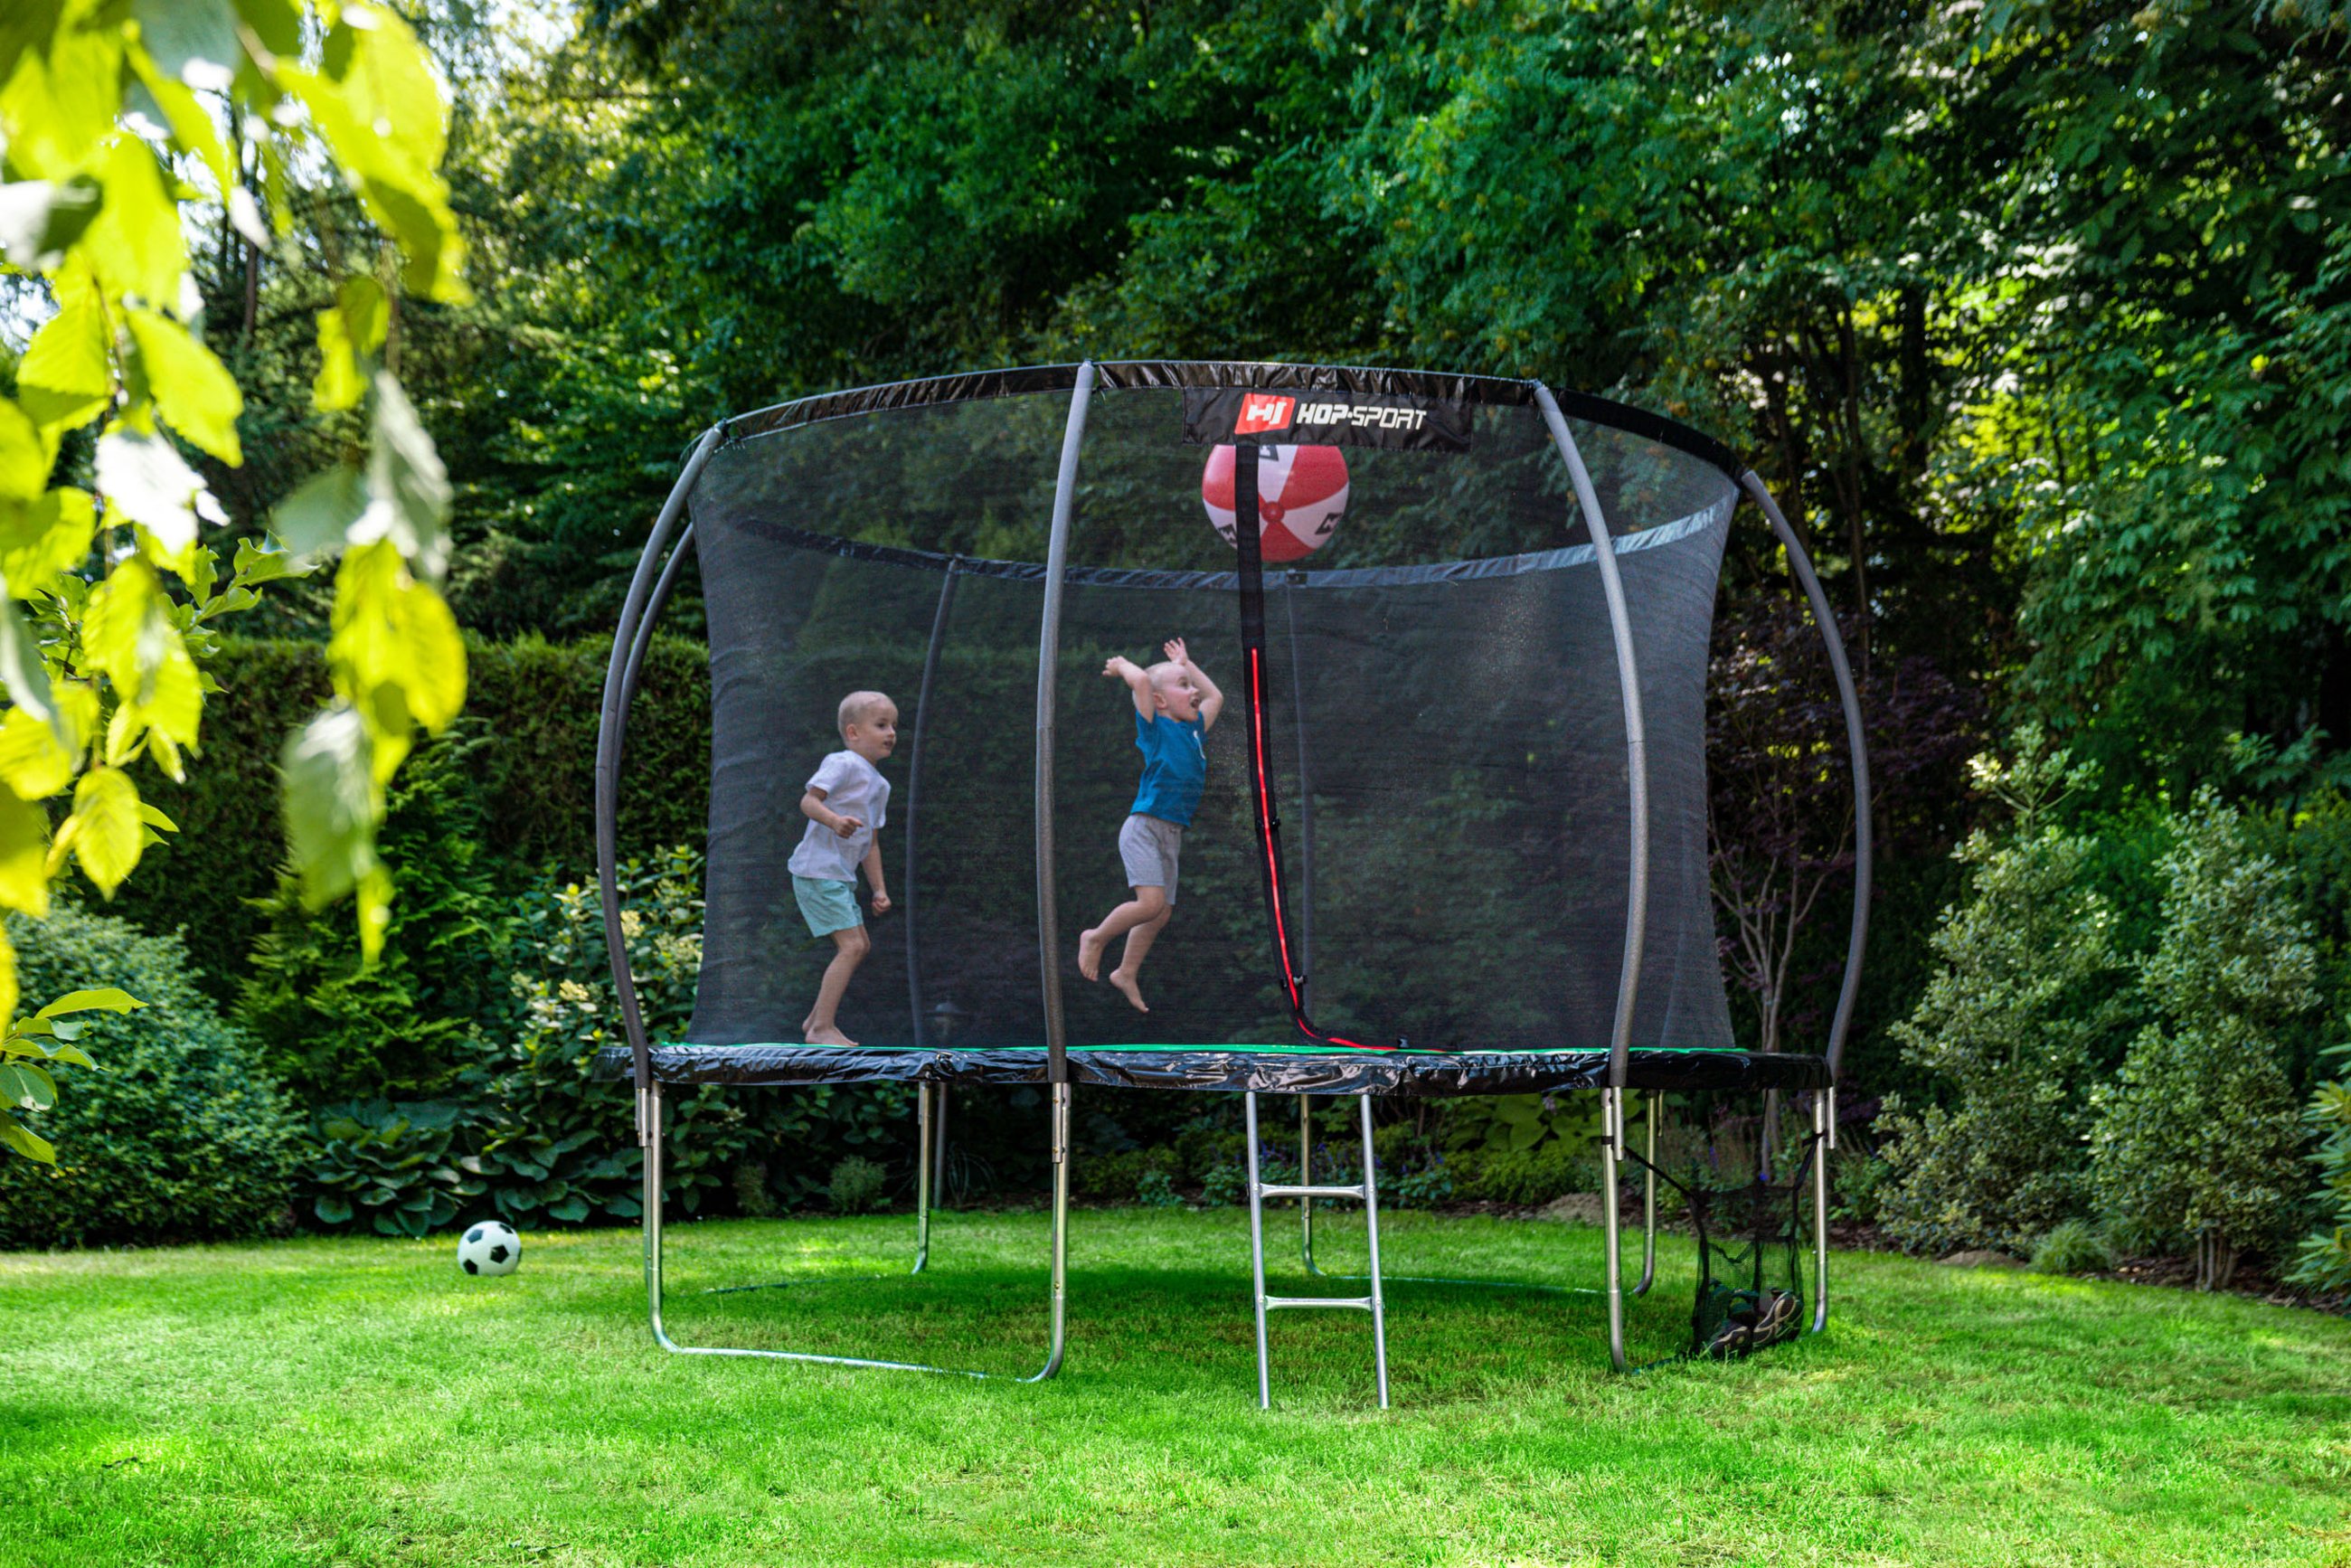 dzieci skaczące na trampolinie ogrodowej Hop-Sport w ogrodzie